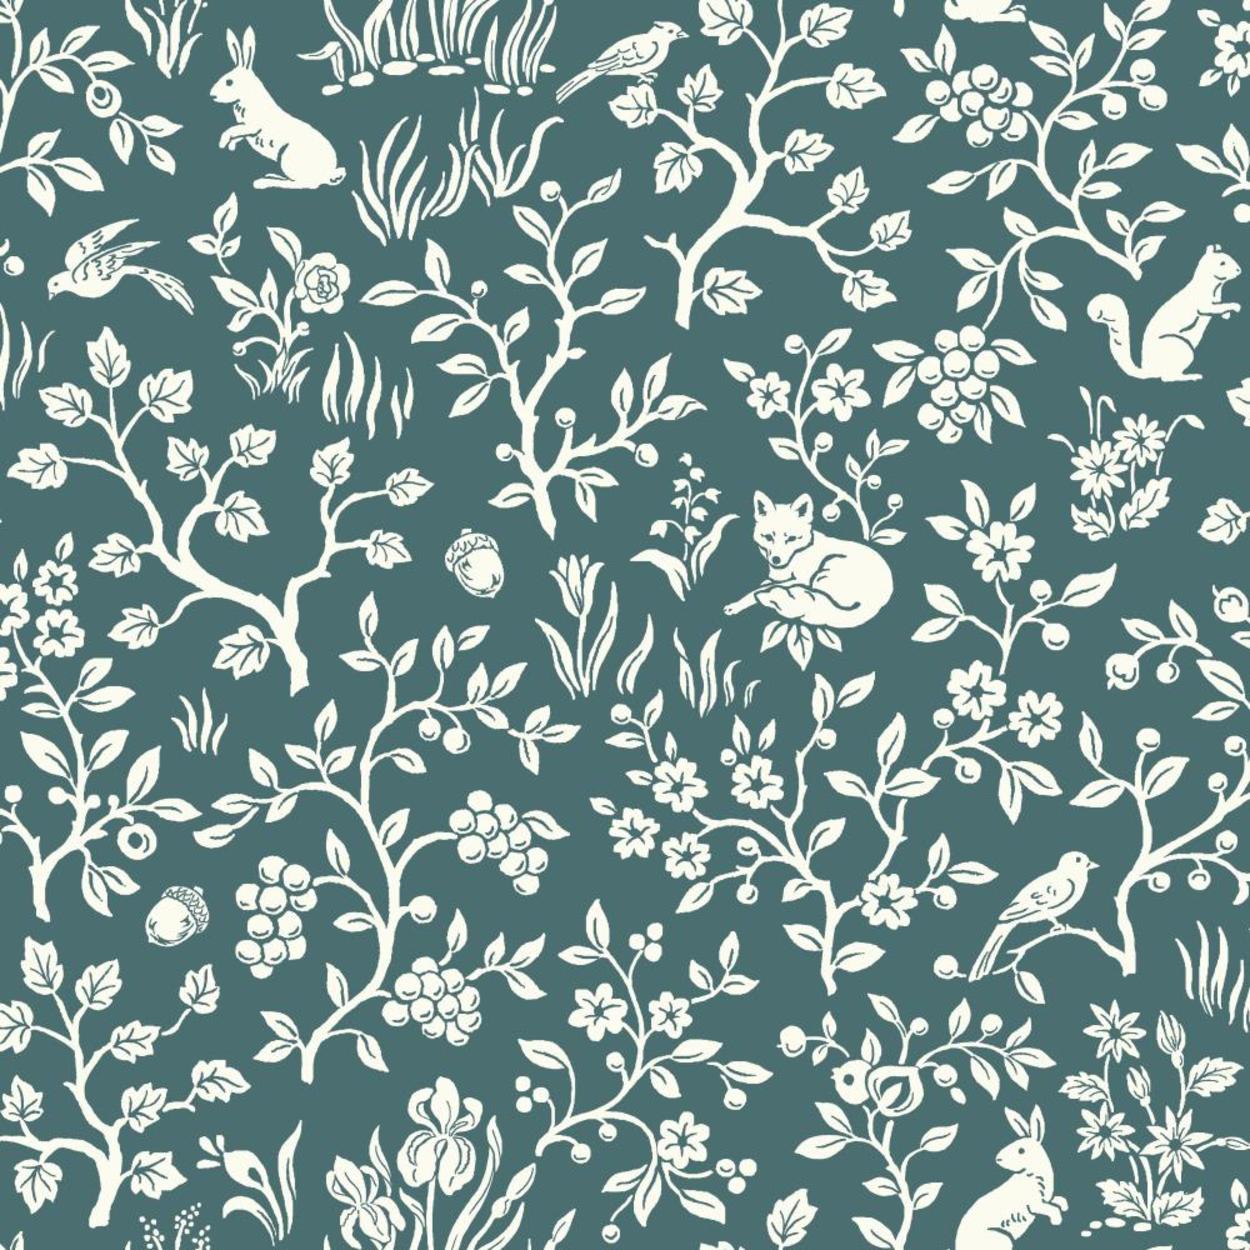 Fox & Hare Wallpaper - Magnolia